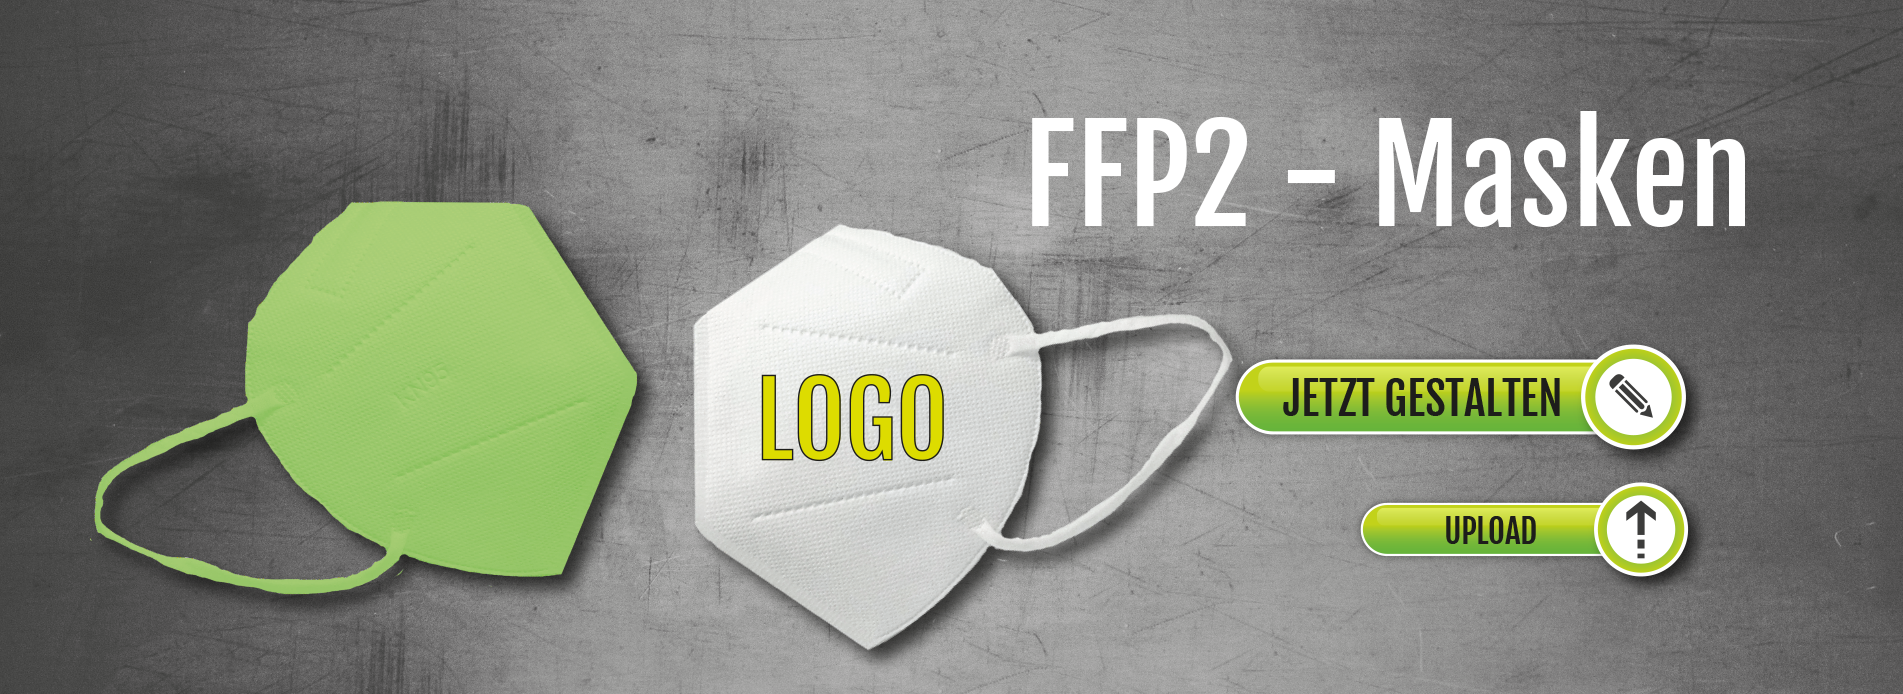 FFP2-Maske  kaufen